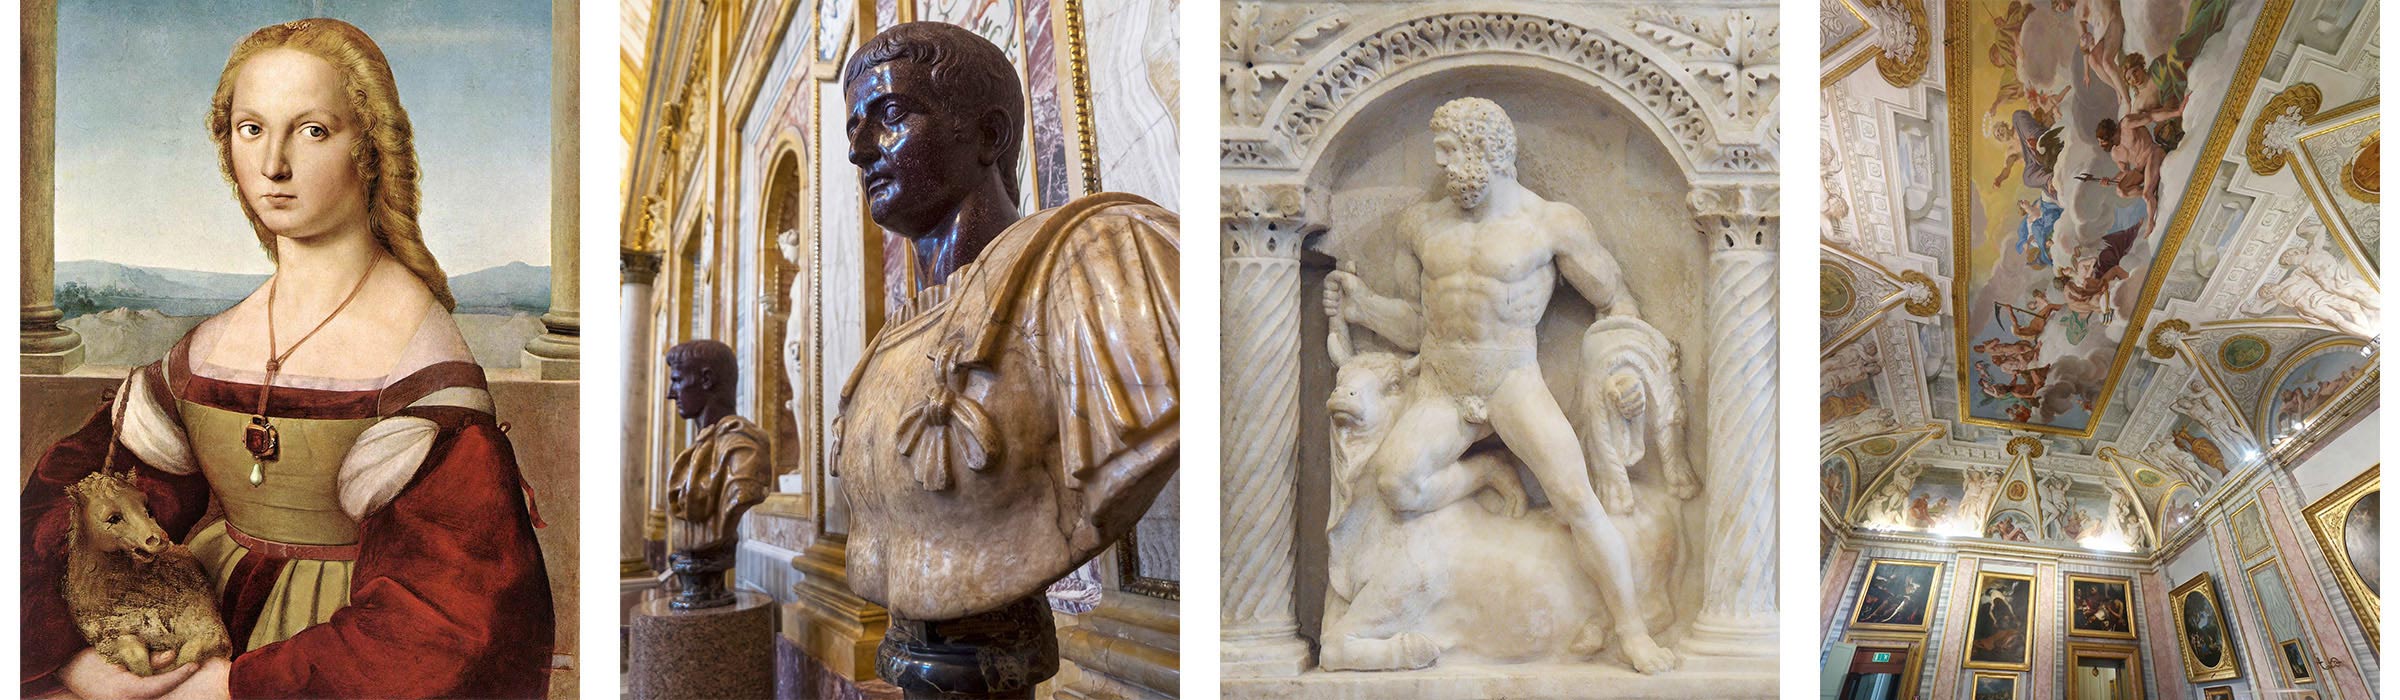 Dama con liocorno | busti romani | bassorilievo romano | stanza galleria borghese